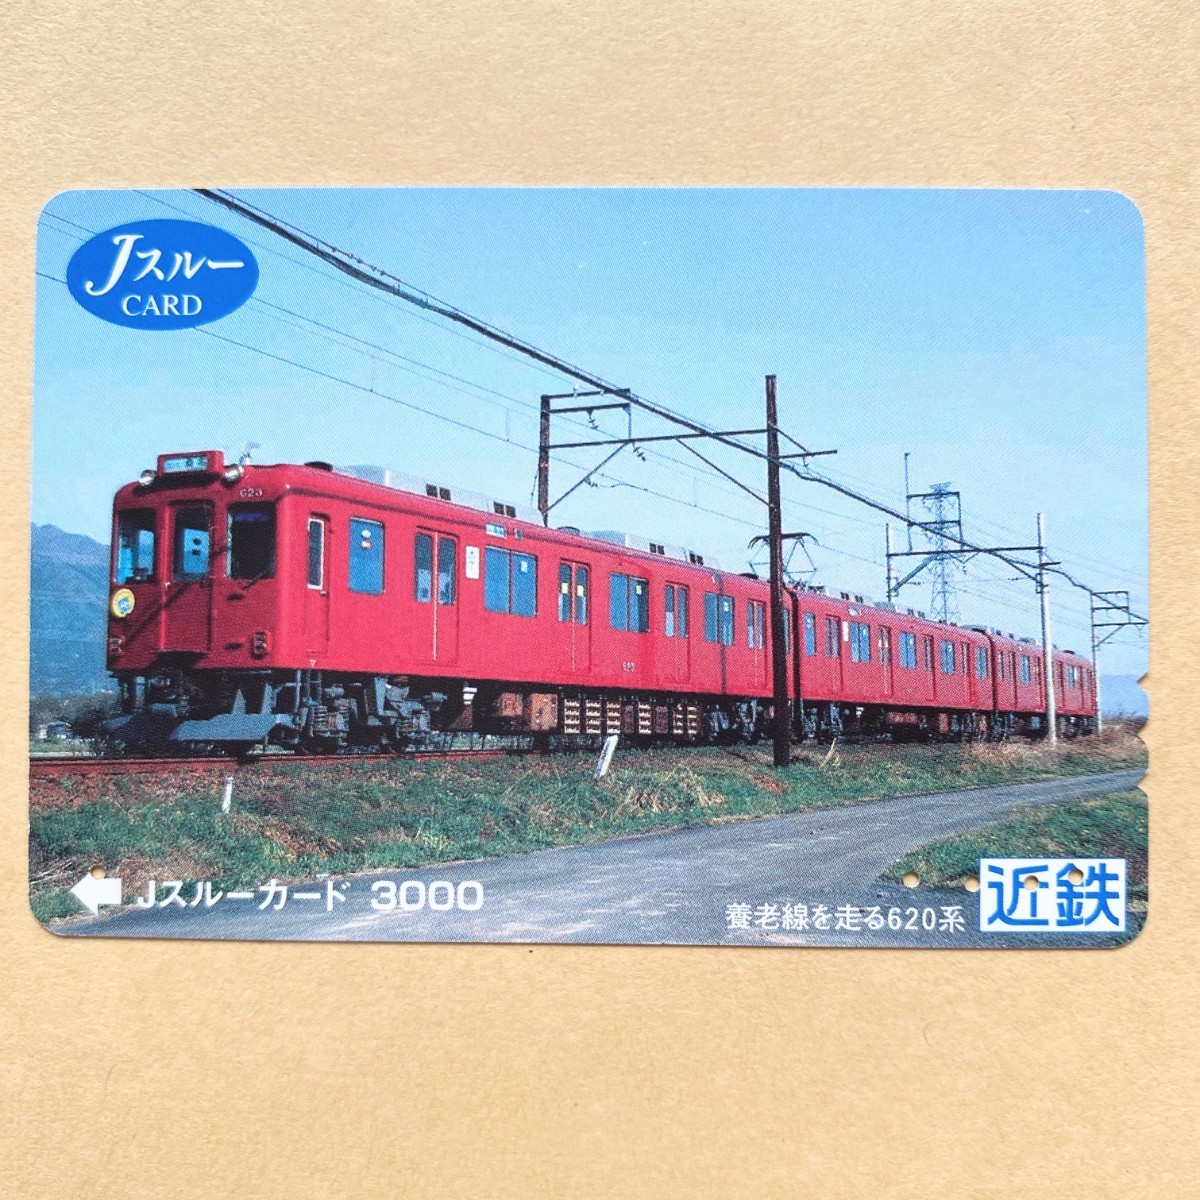 [ использованный ] Js Roo карта близко металлический Kinki Япония железная дорога .. линия . едет 620 серия 